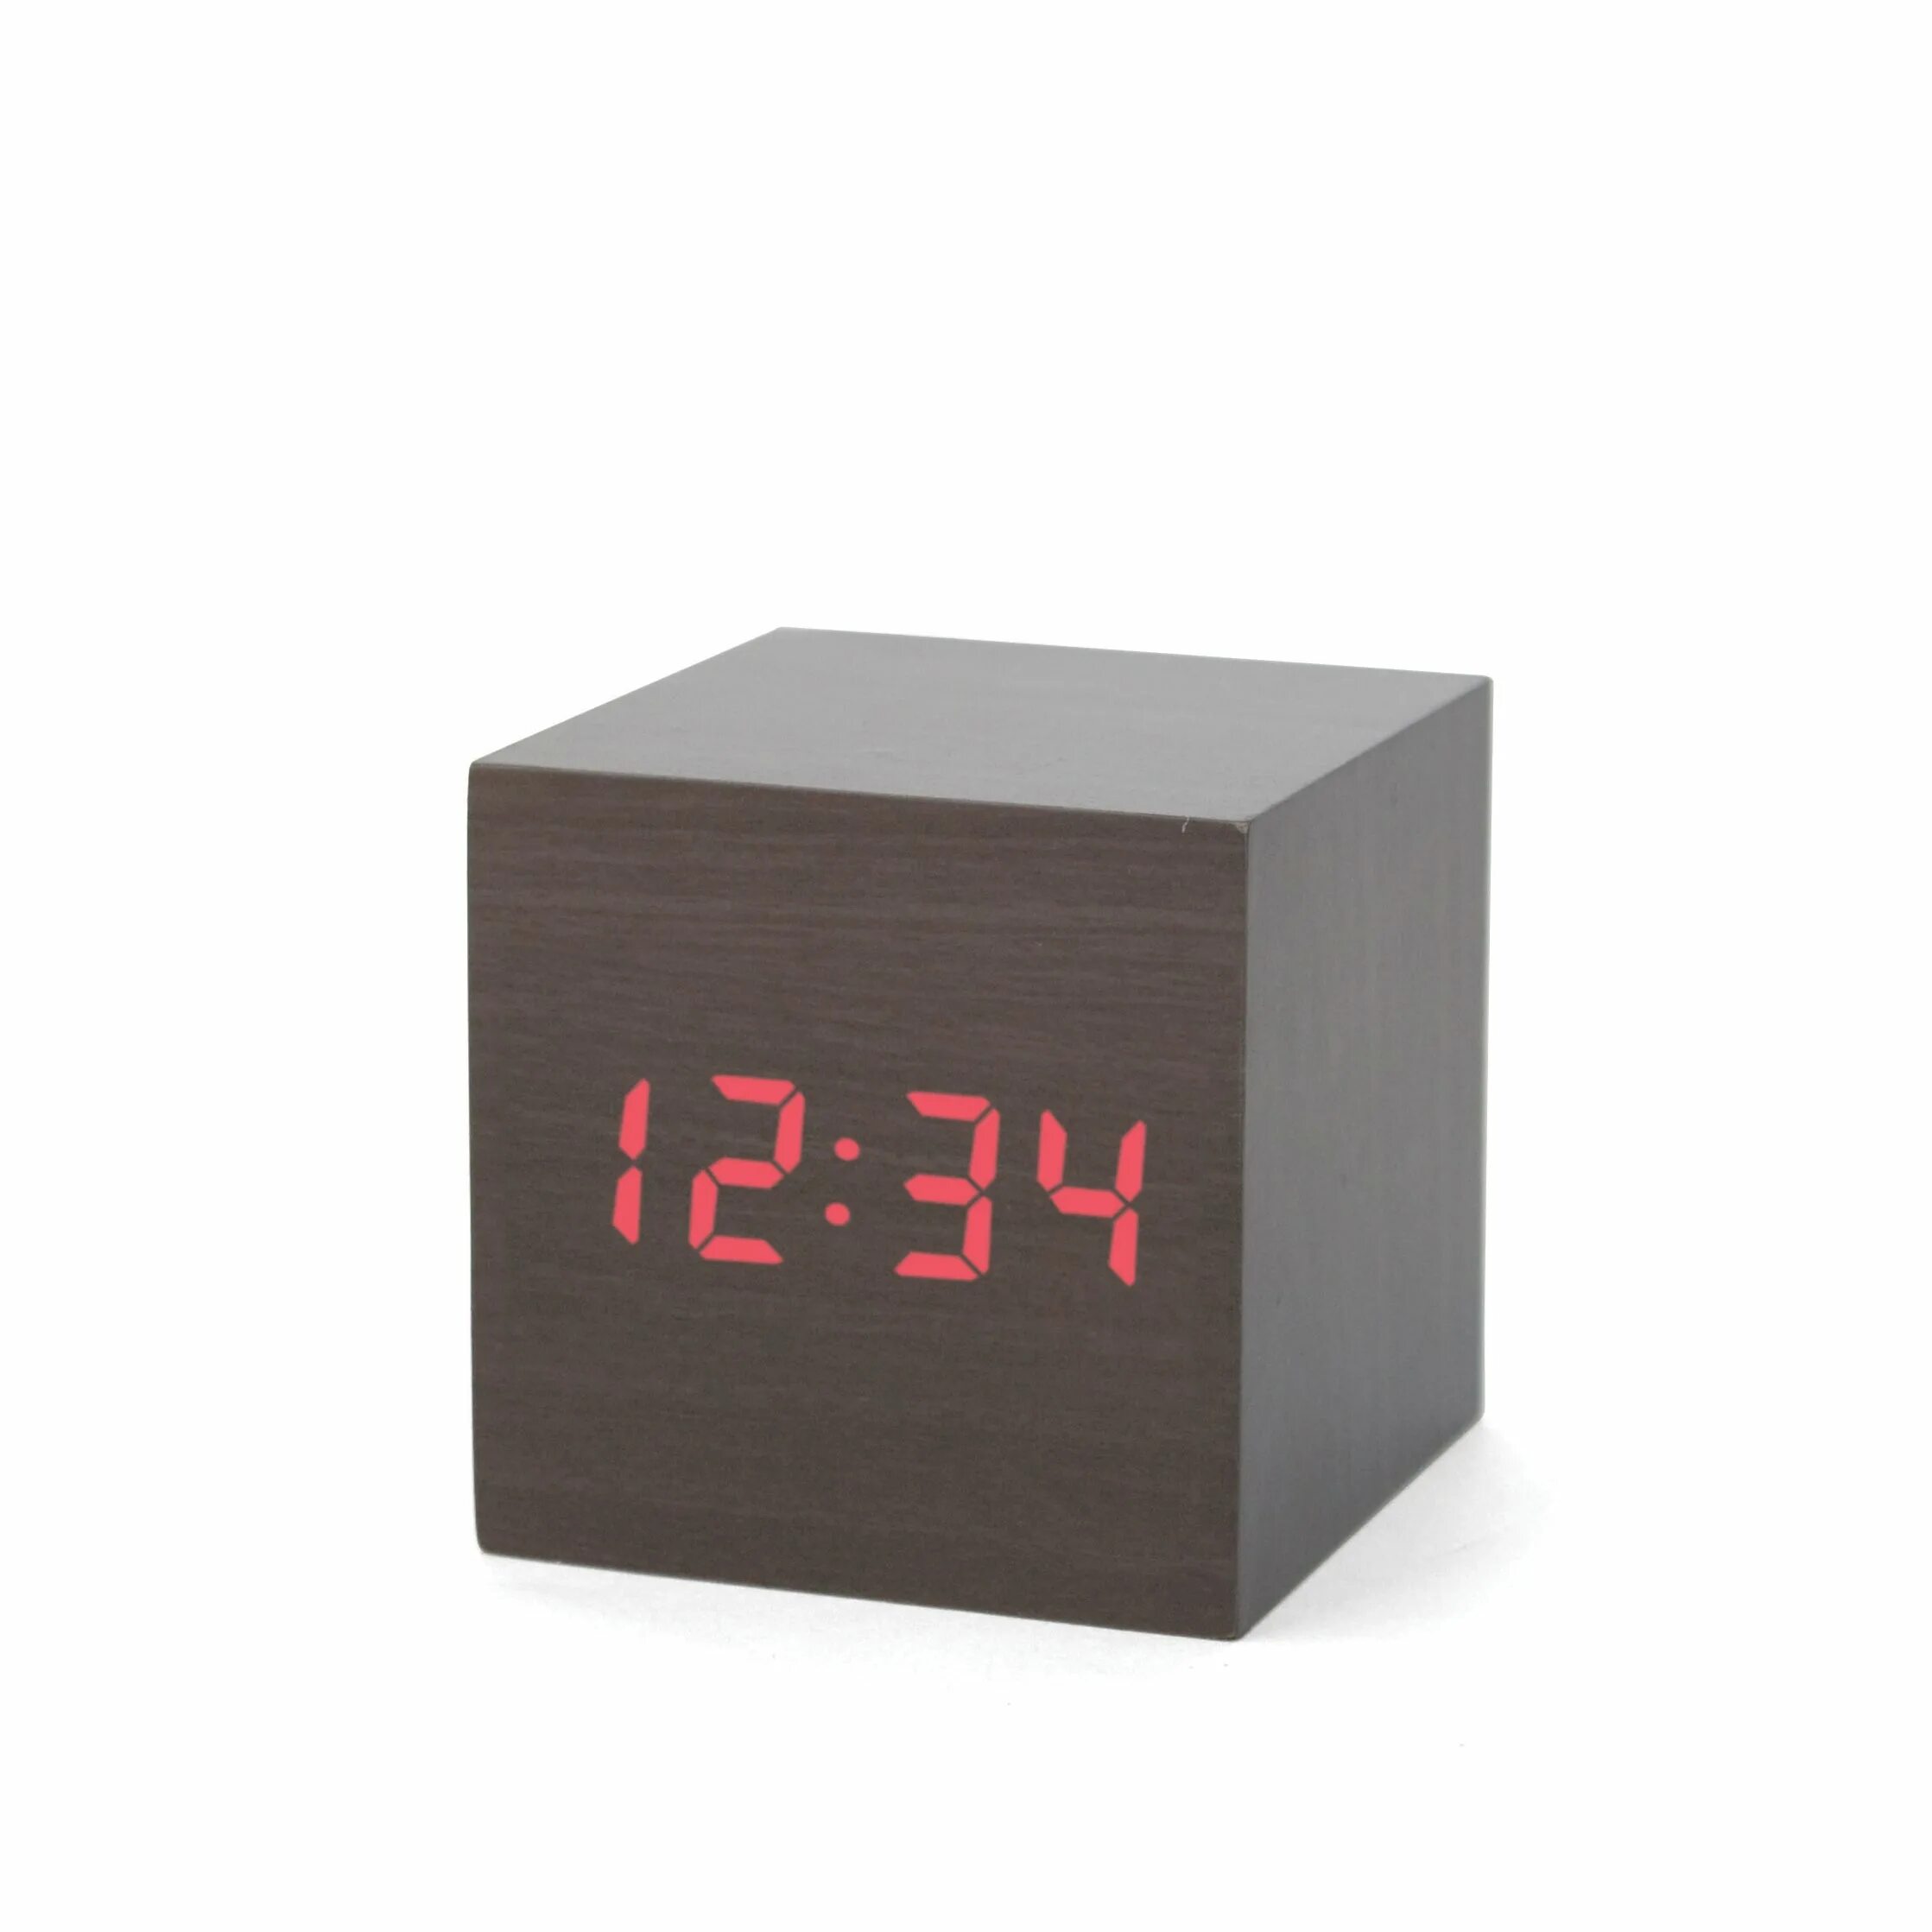 Часы cube. Цифровые часы форме Куба 6на6. Часы будильник. Настольные часы электронные. Настольные часы с будильником.